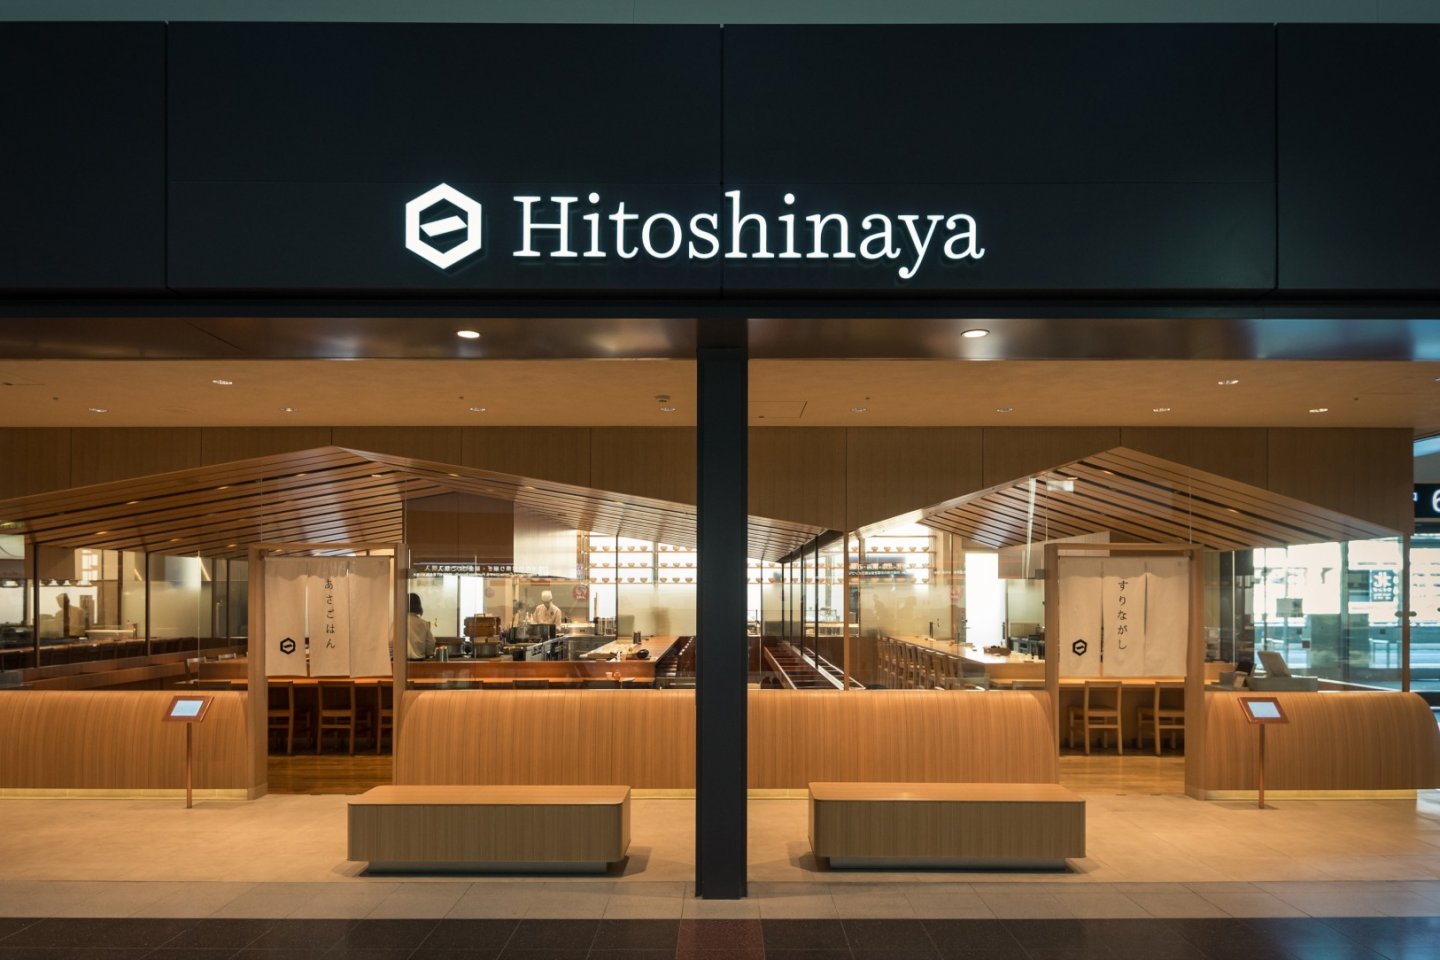 히토시나야의 정면은 일본 현대식 디자인으로 꾸며져 있다.